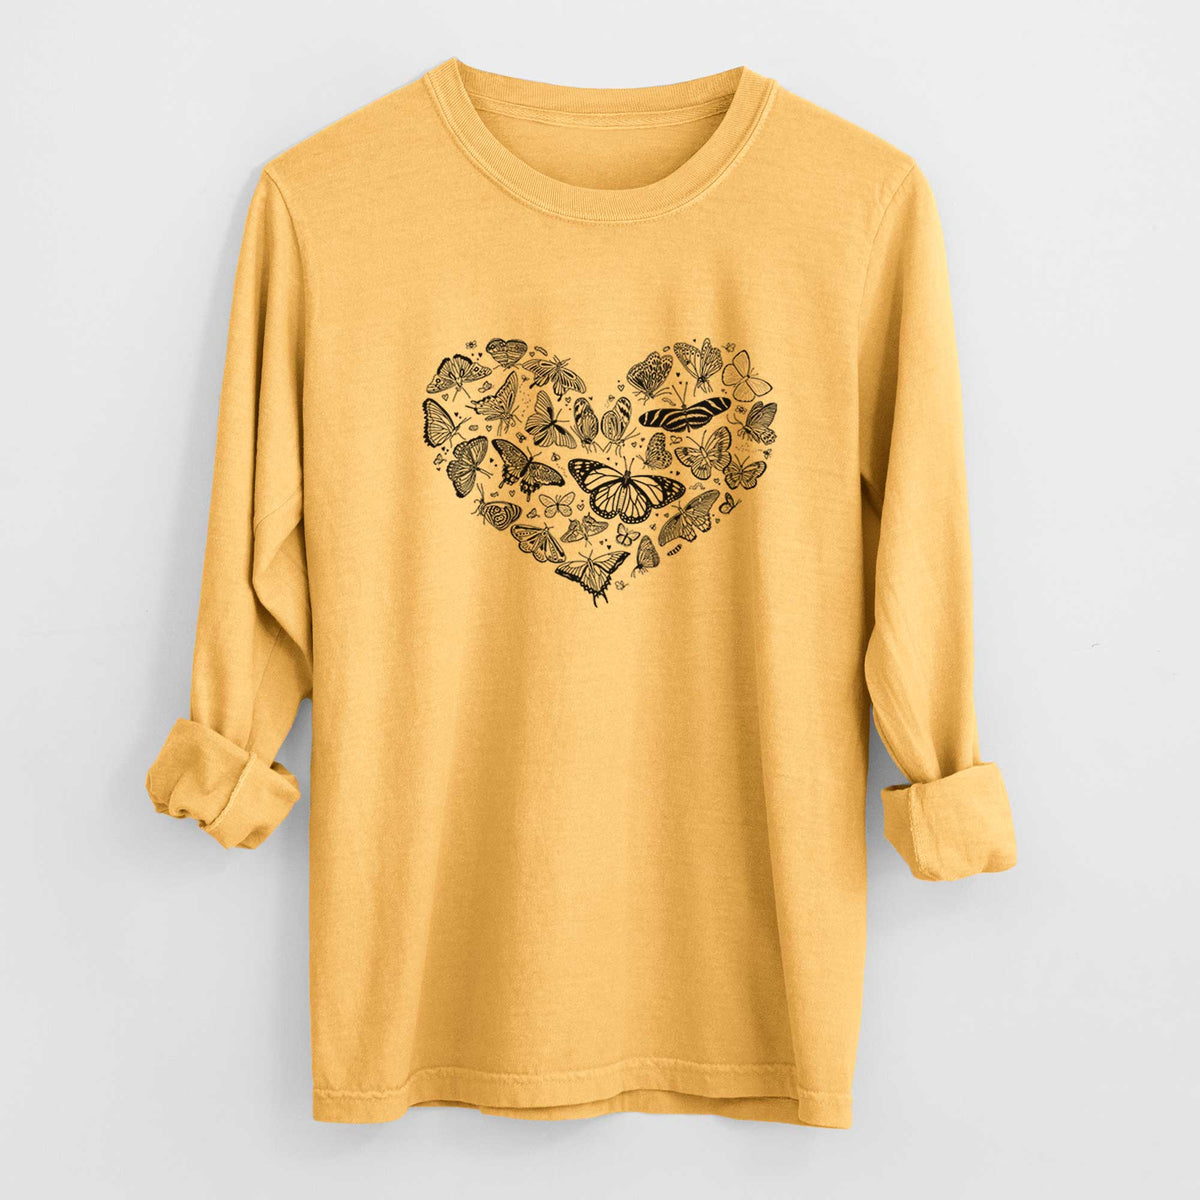 Heart Full of Butterflies - Heavyweight 100% Cotton Long Sleeve